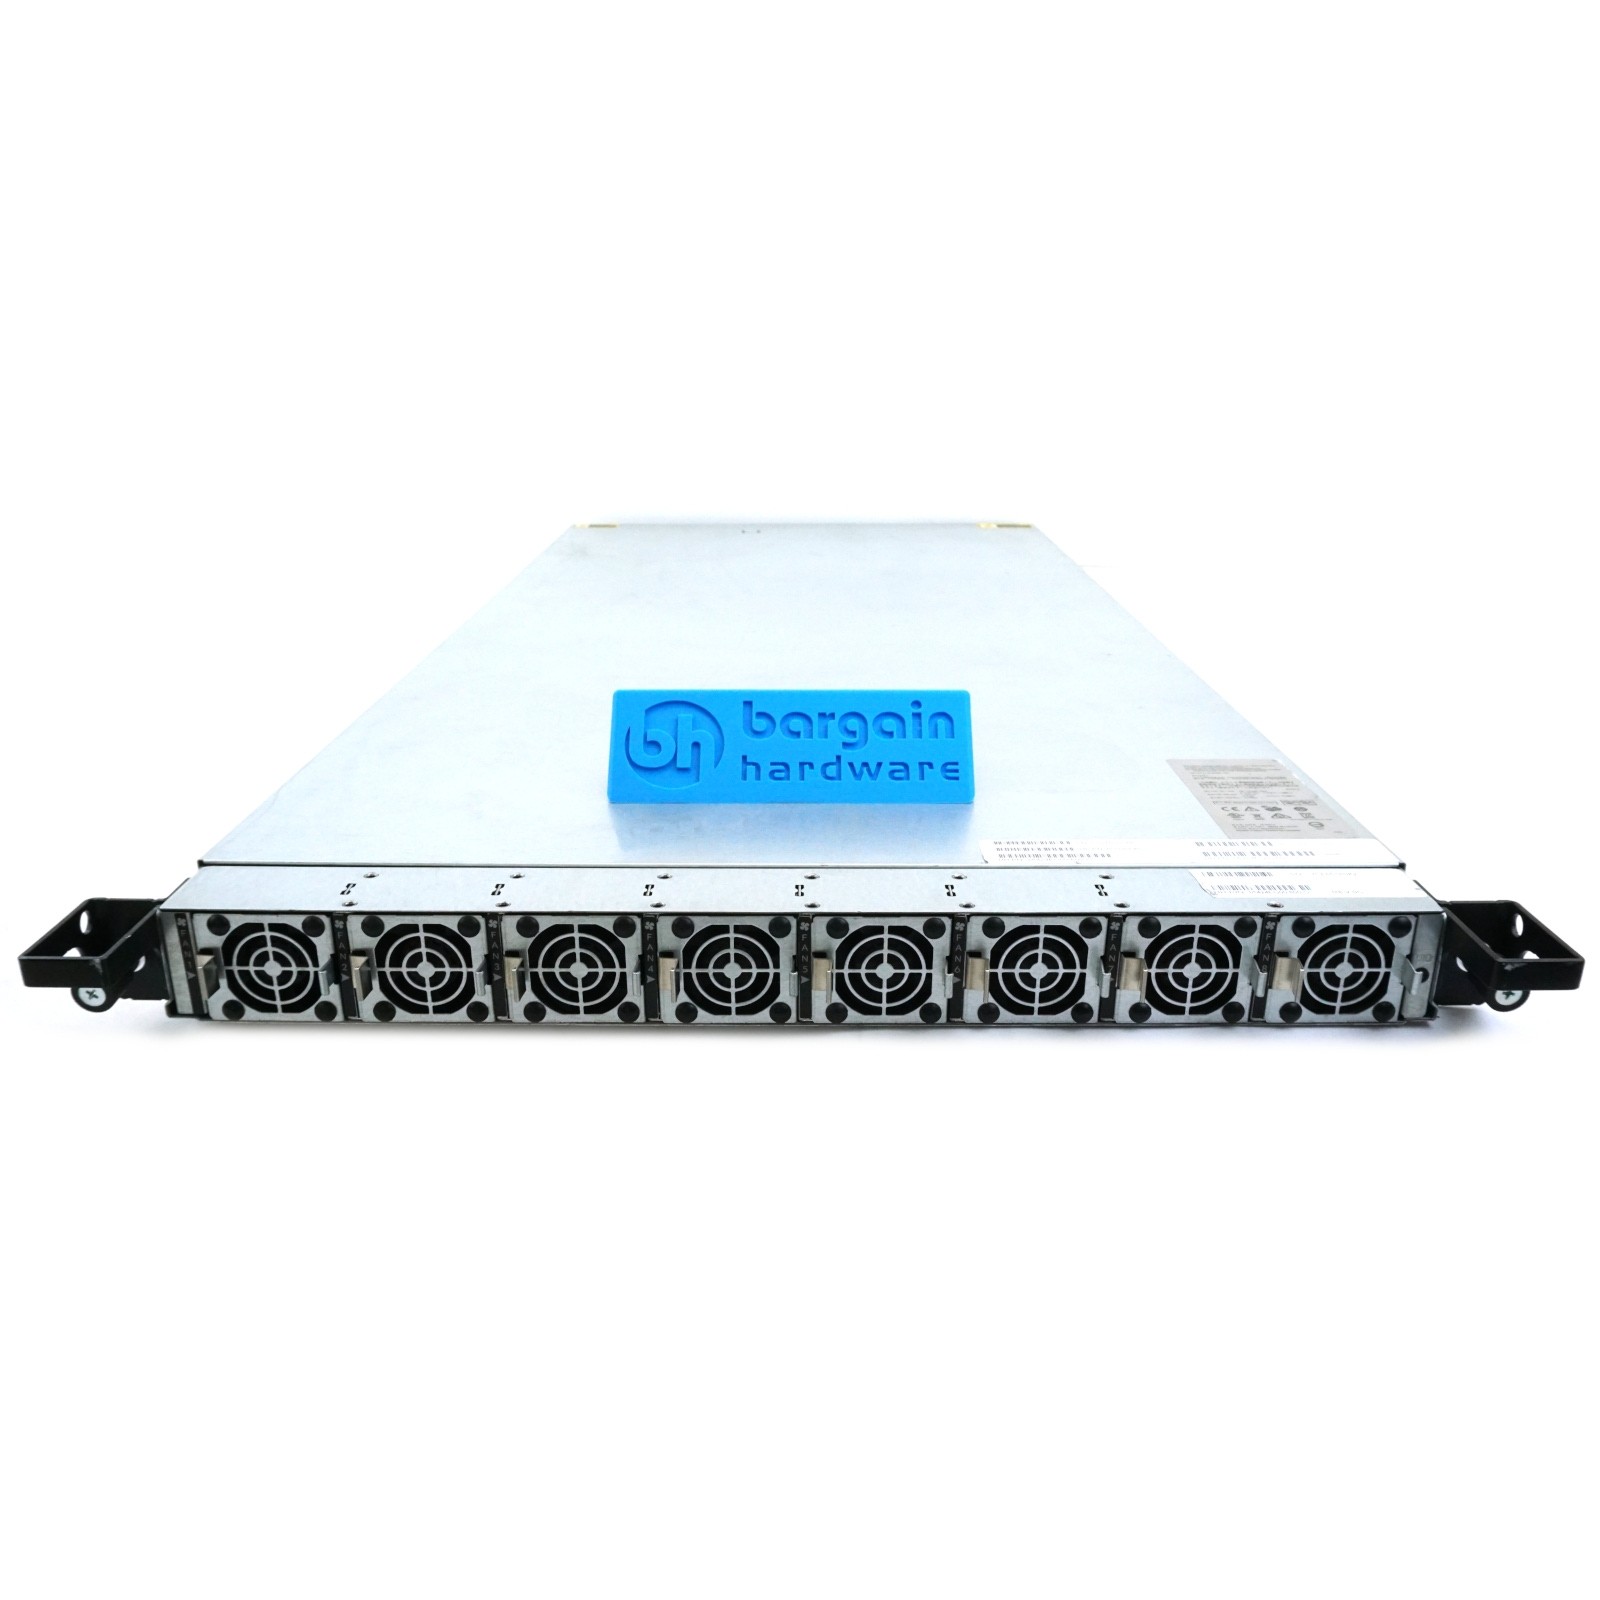 HP Cloudline CL3100 G3 1U 12x 3.5" (LFF), 2x 2.5" (SFF)